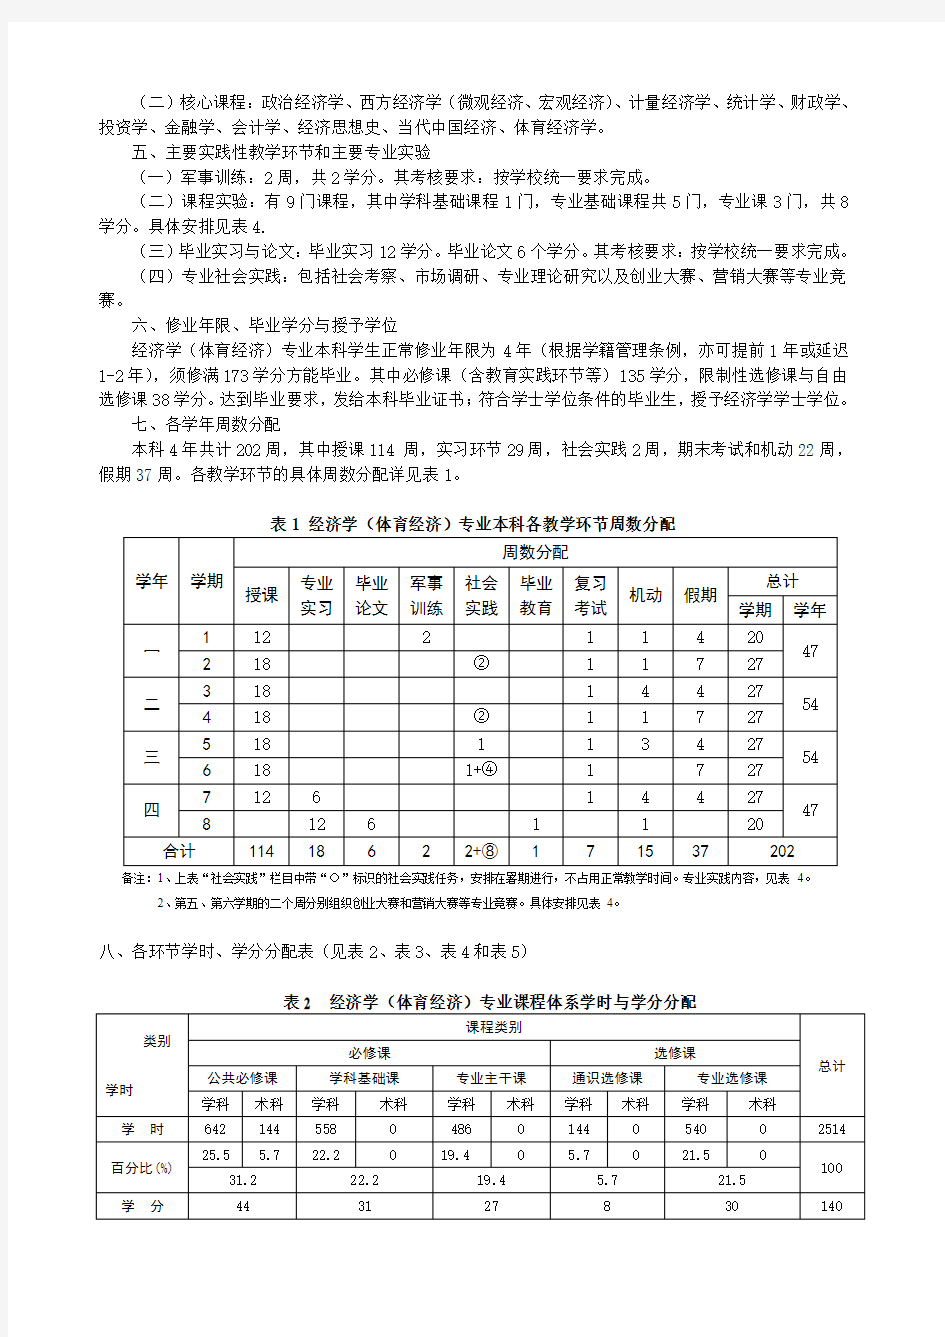 武汉体育学院(2013年修订)经济学(体育经济)专业培养方案